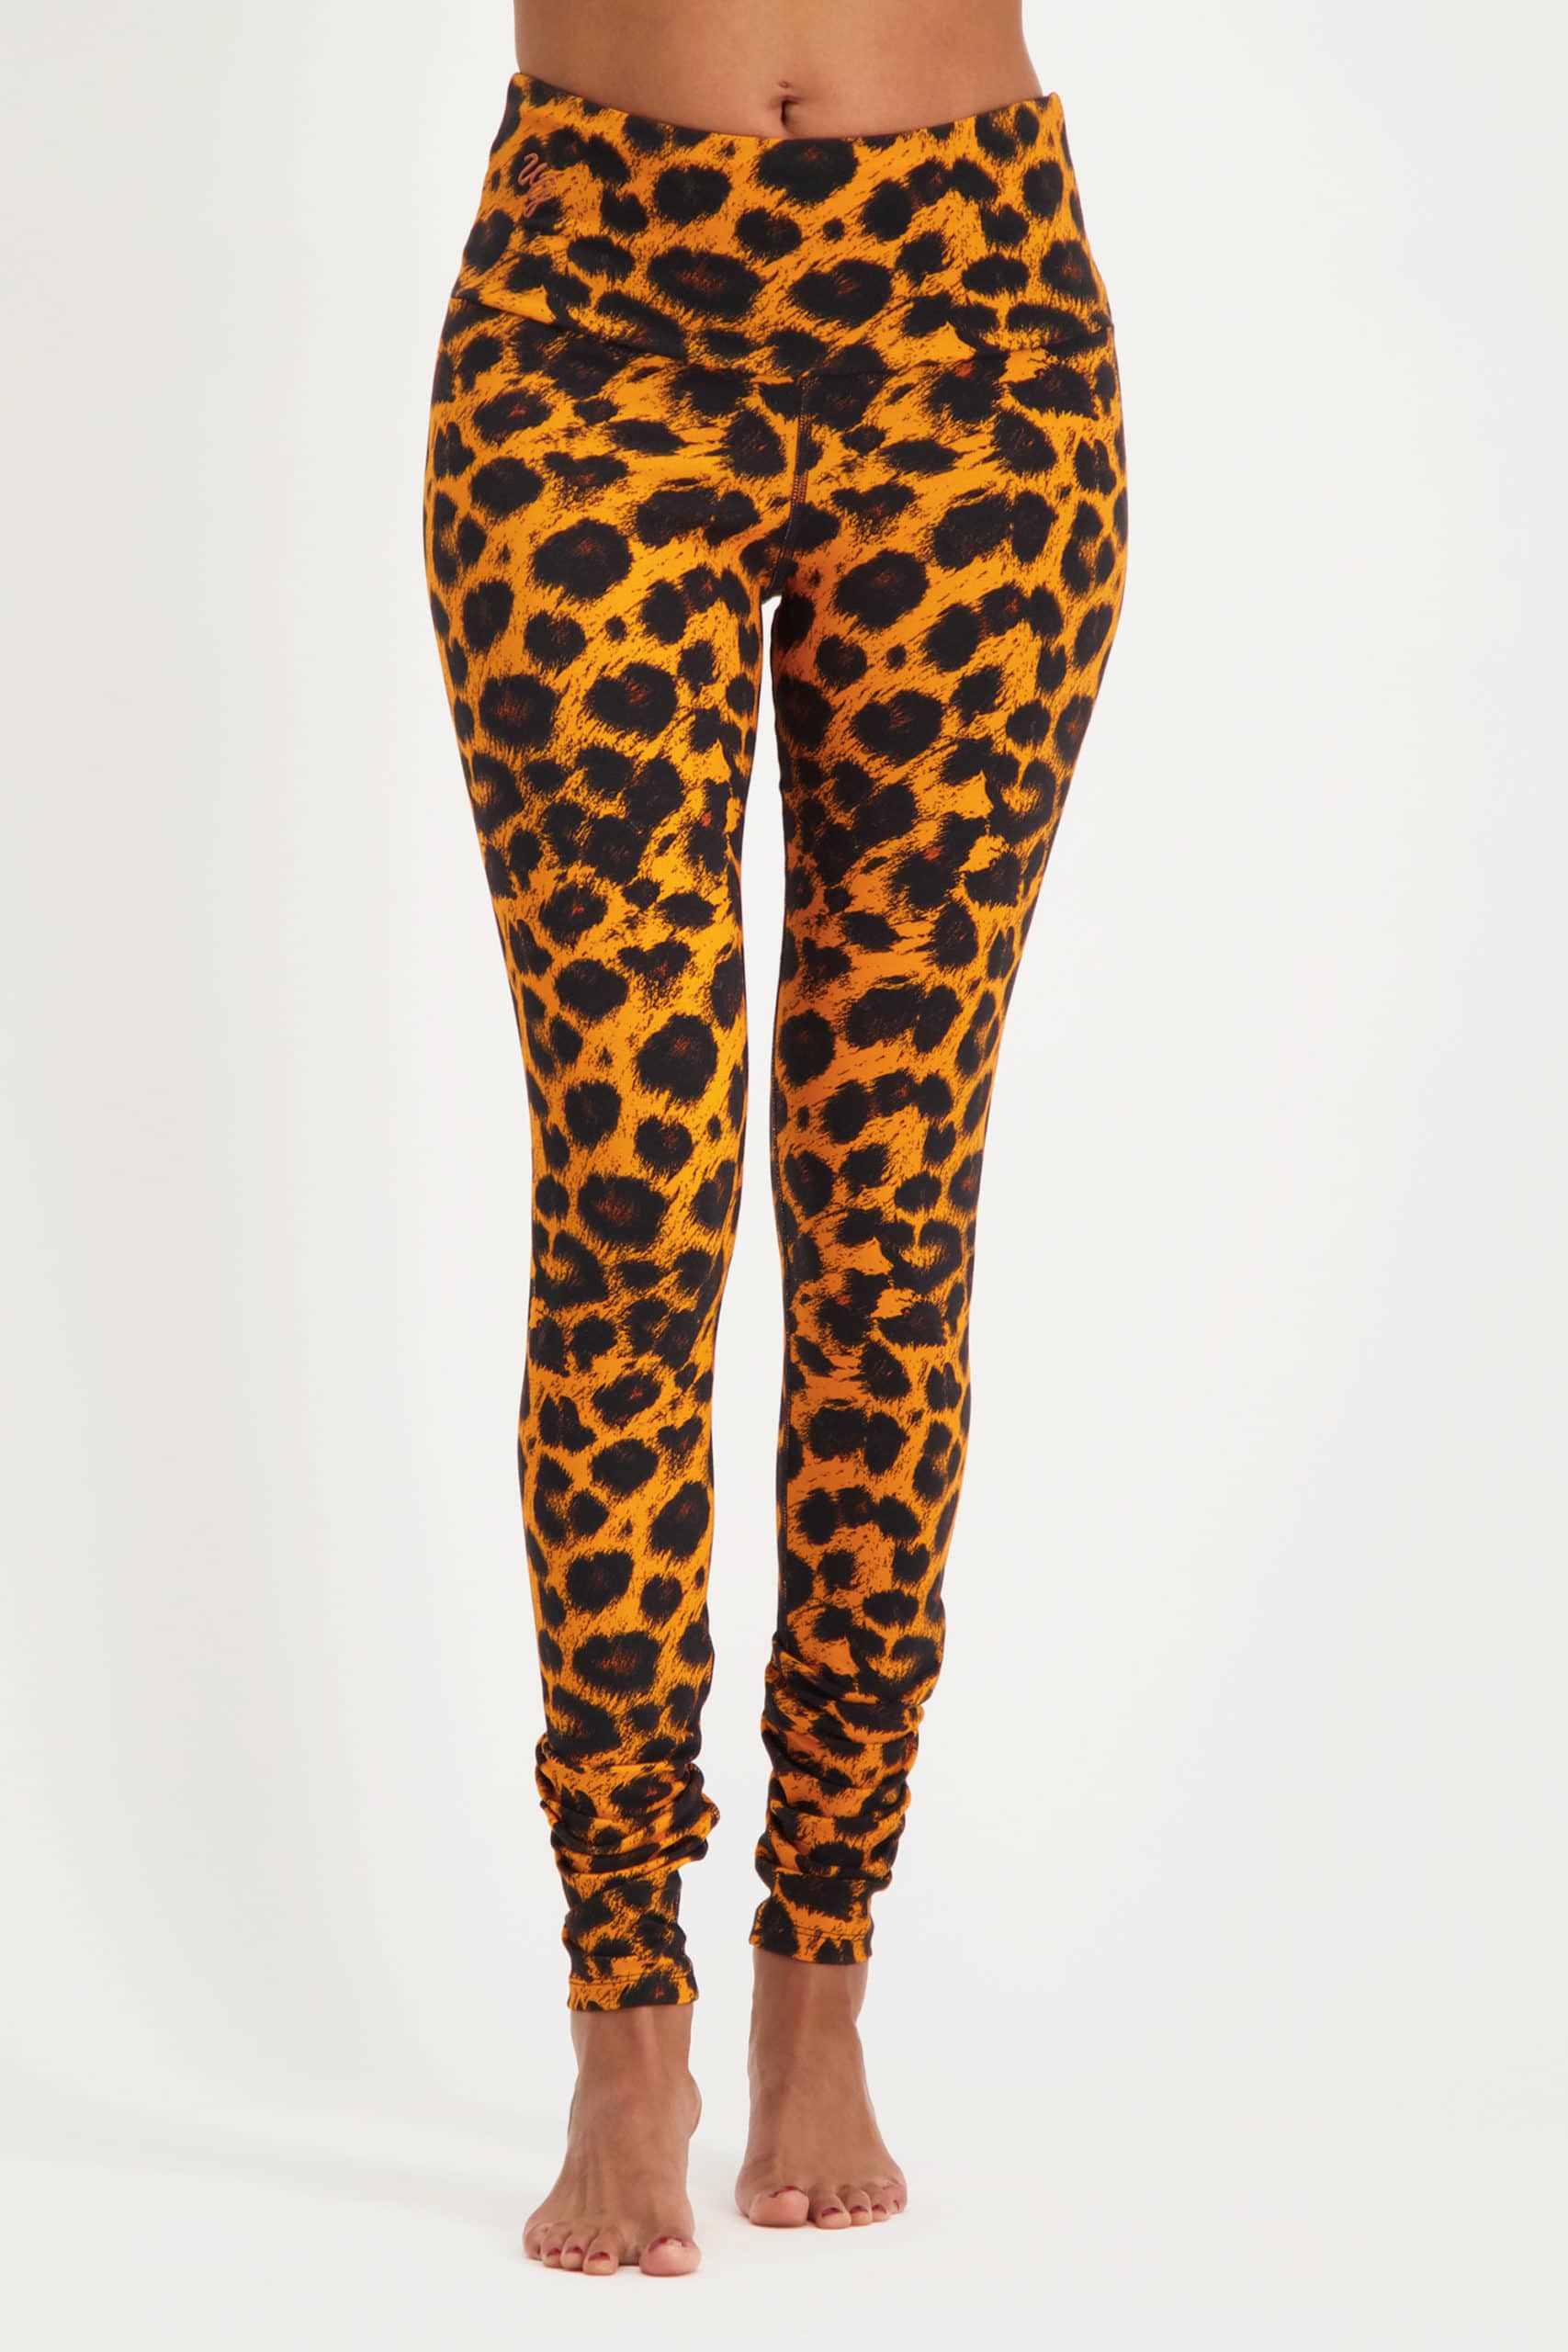 Satya leggings-leopard-10125528-model-front